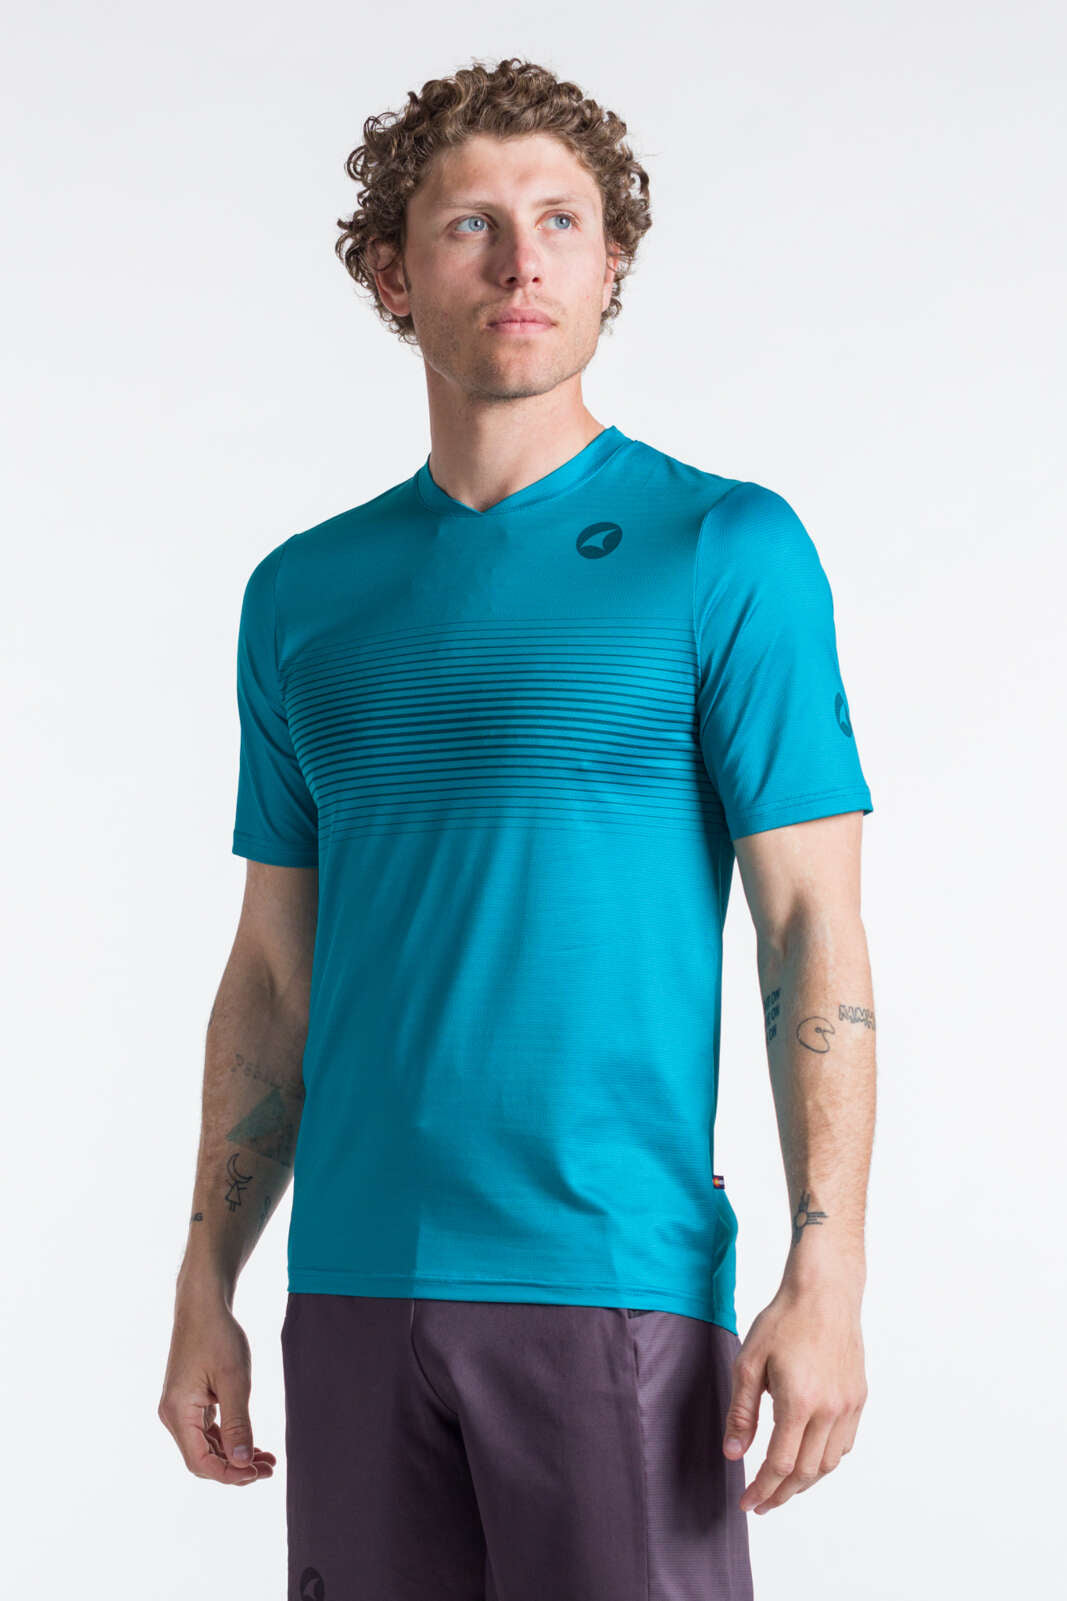 Men's Running Shirt - Front View